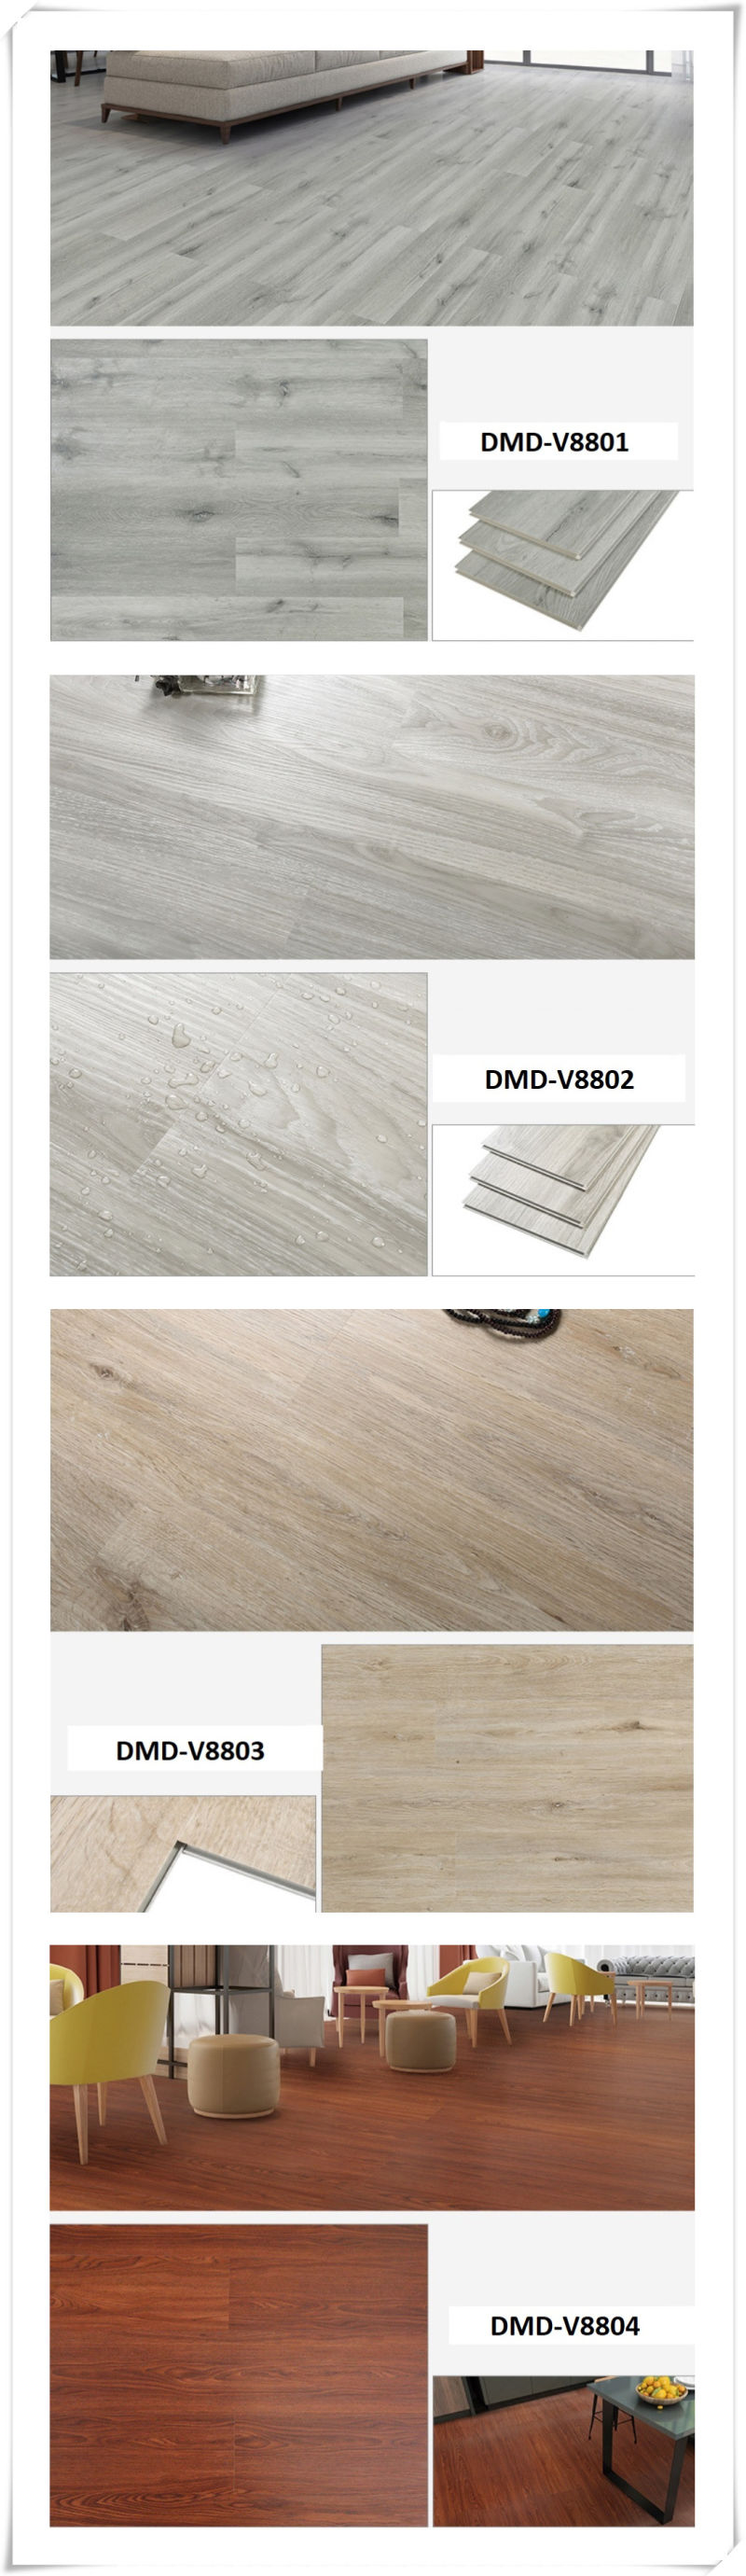 Wear-Resisitng Timber Floor Embossed Laminated Flooring 8 mm Laminate Floor